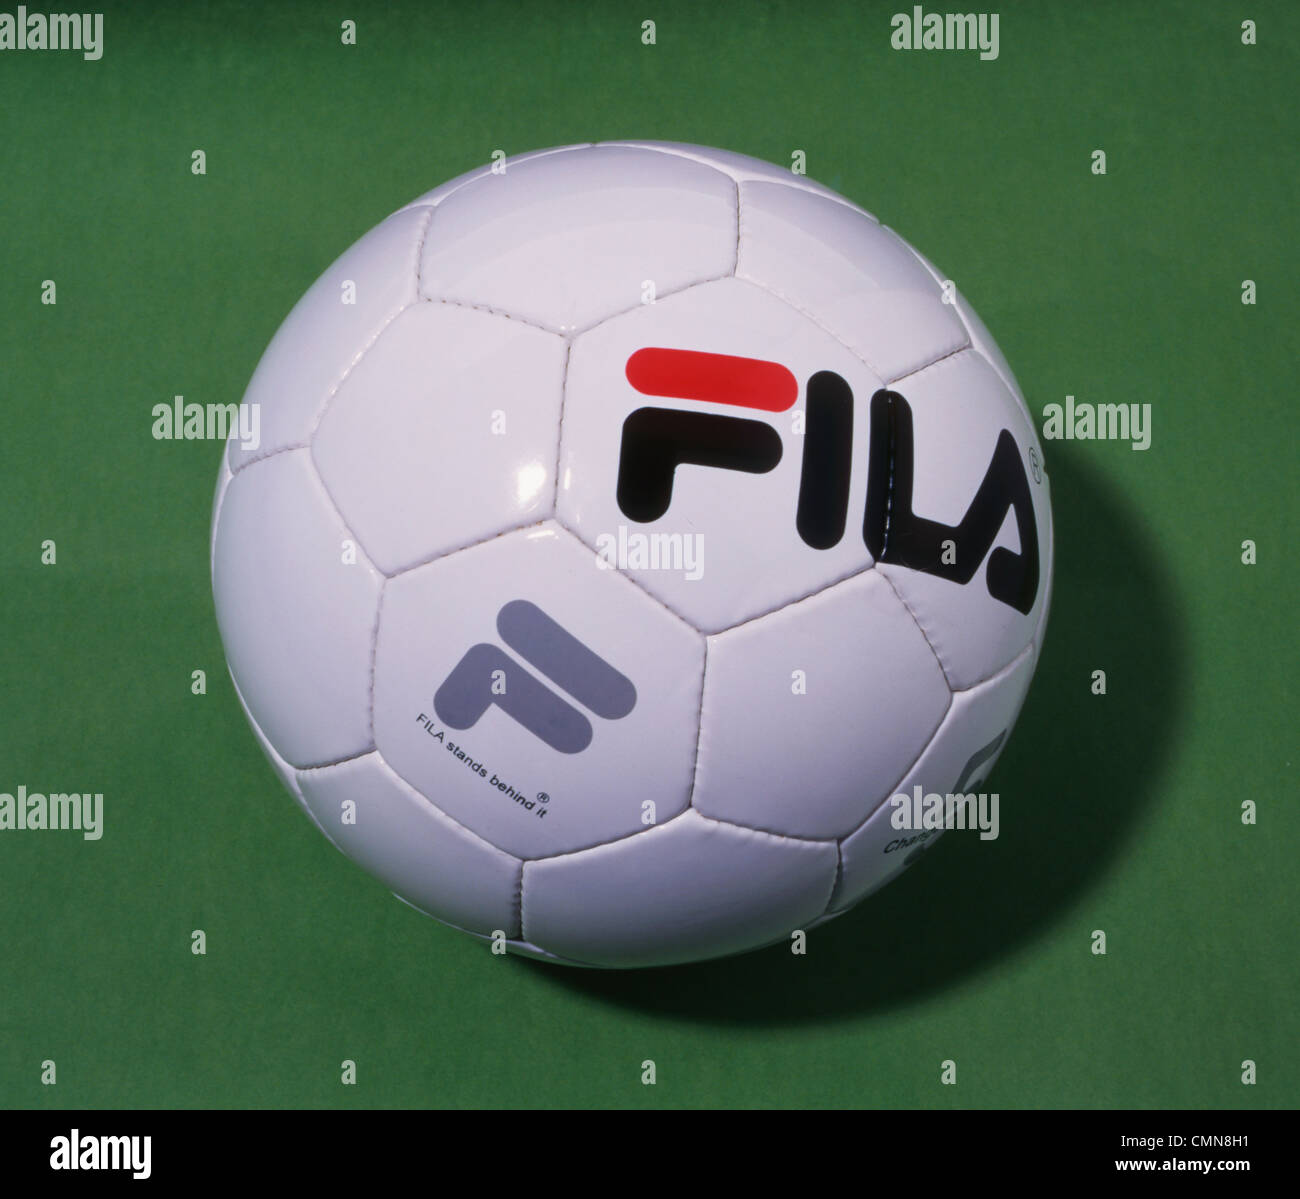 Fila Football Shop, SAVE 40% - lutheranems.com